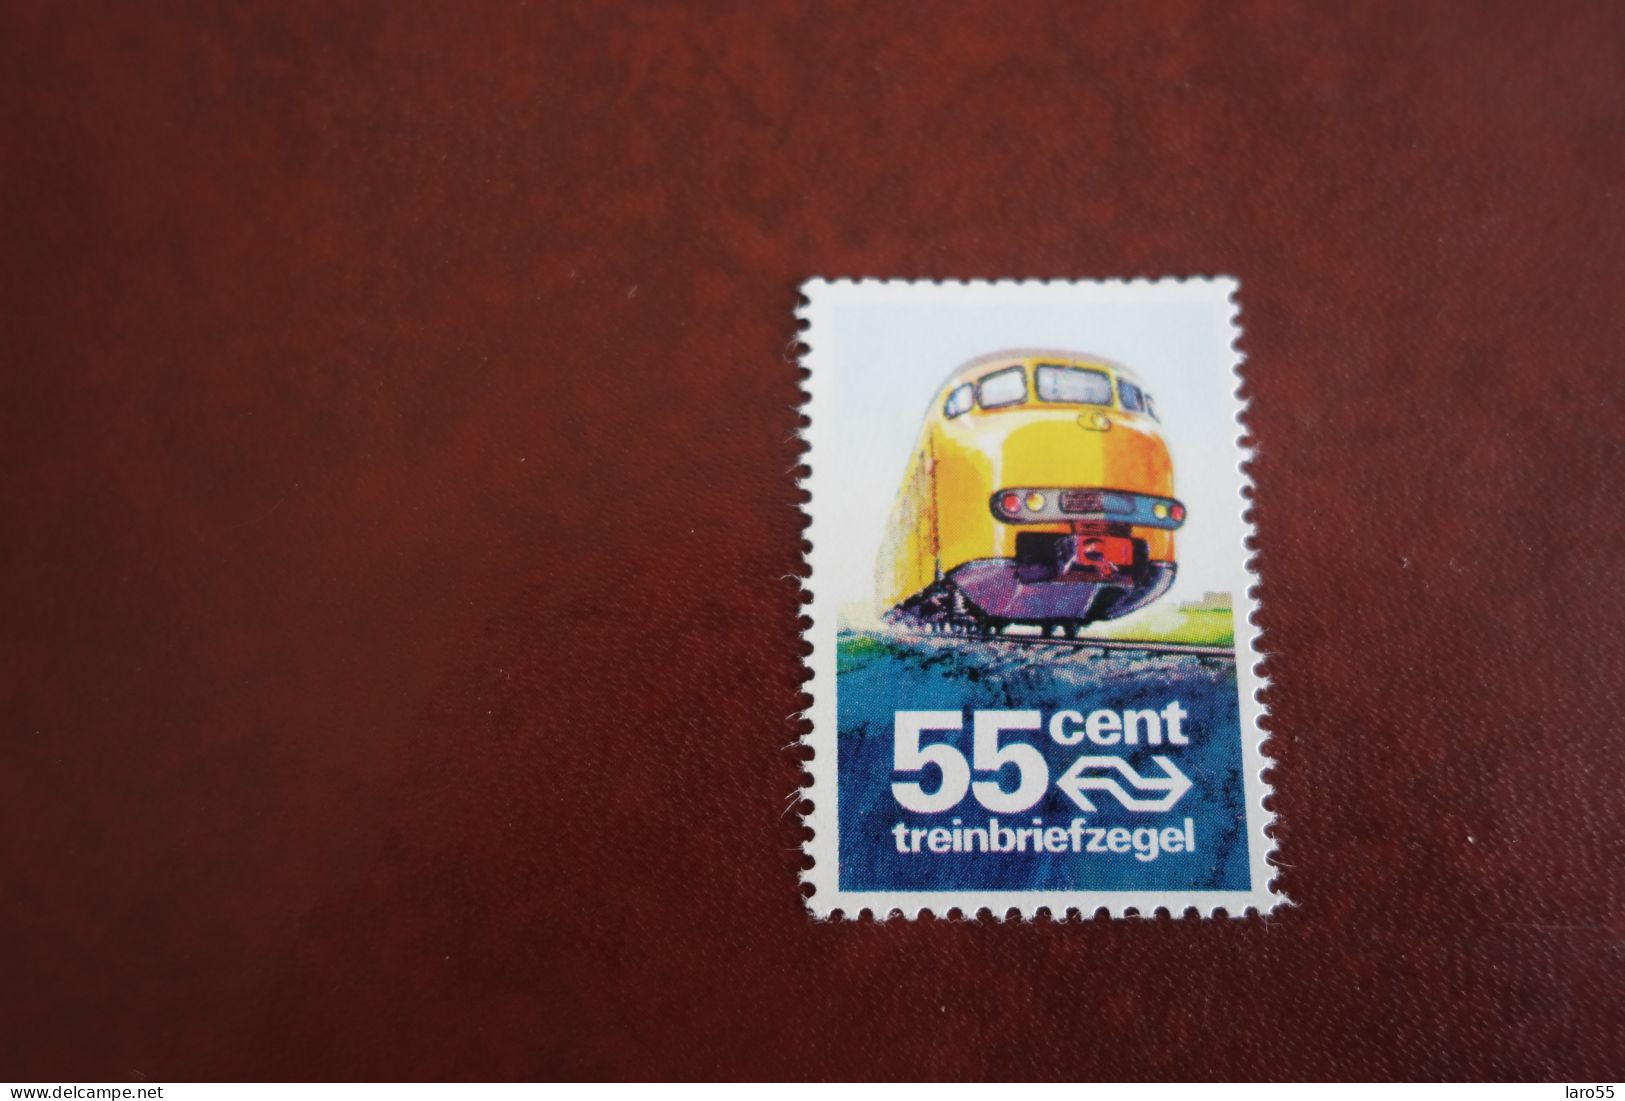 Treinbriefzegel 55 Cent - Schienenverkehr